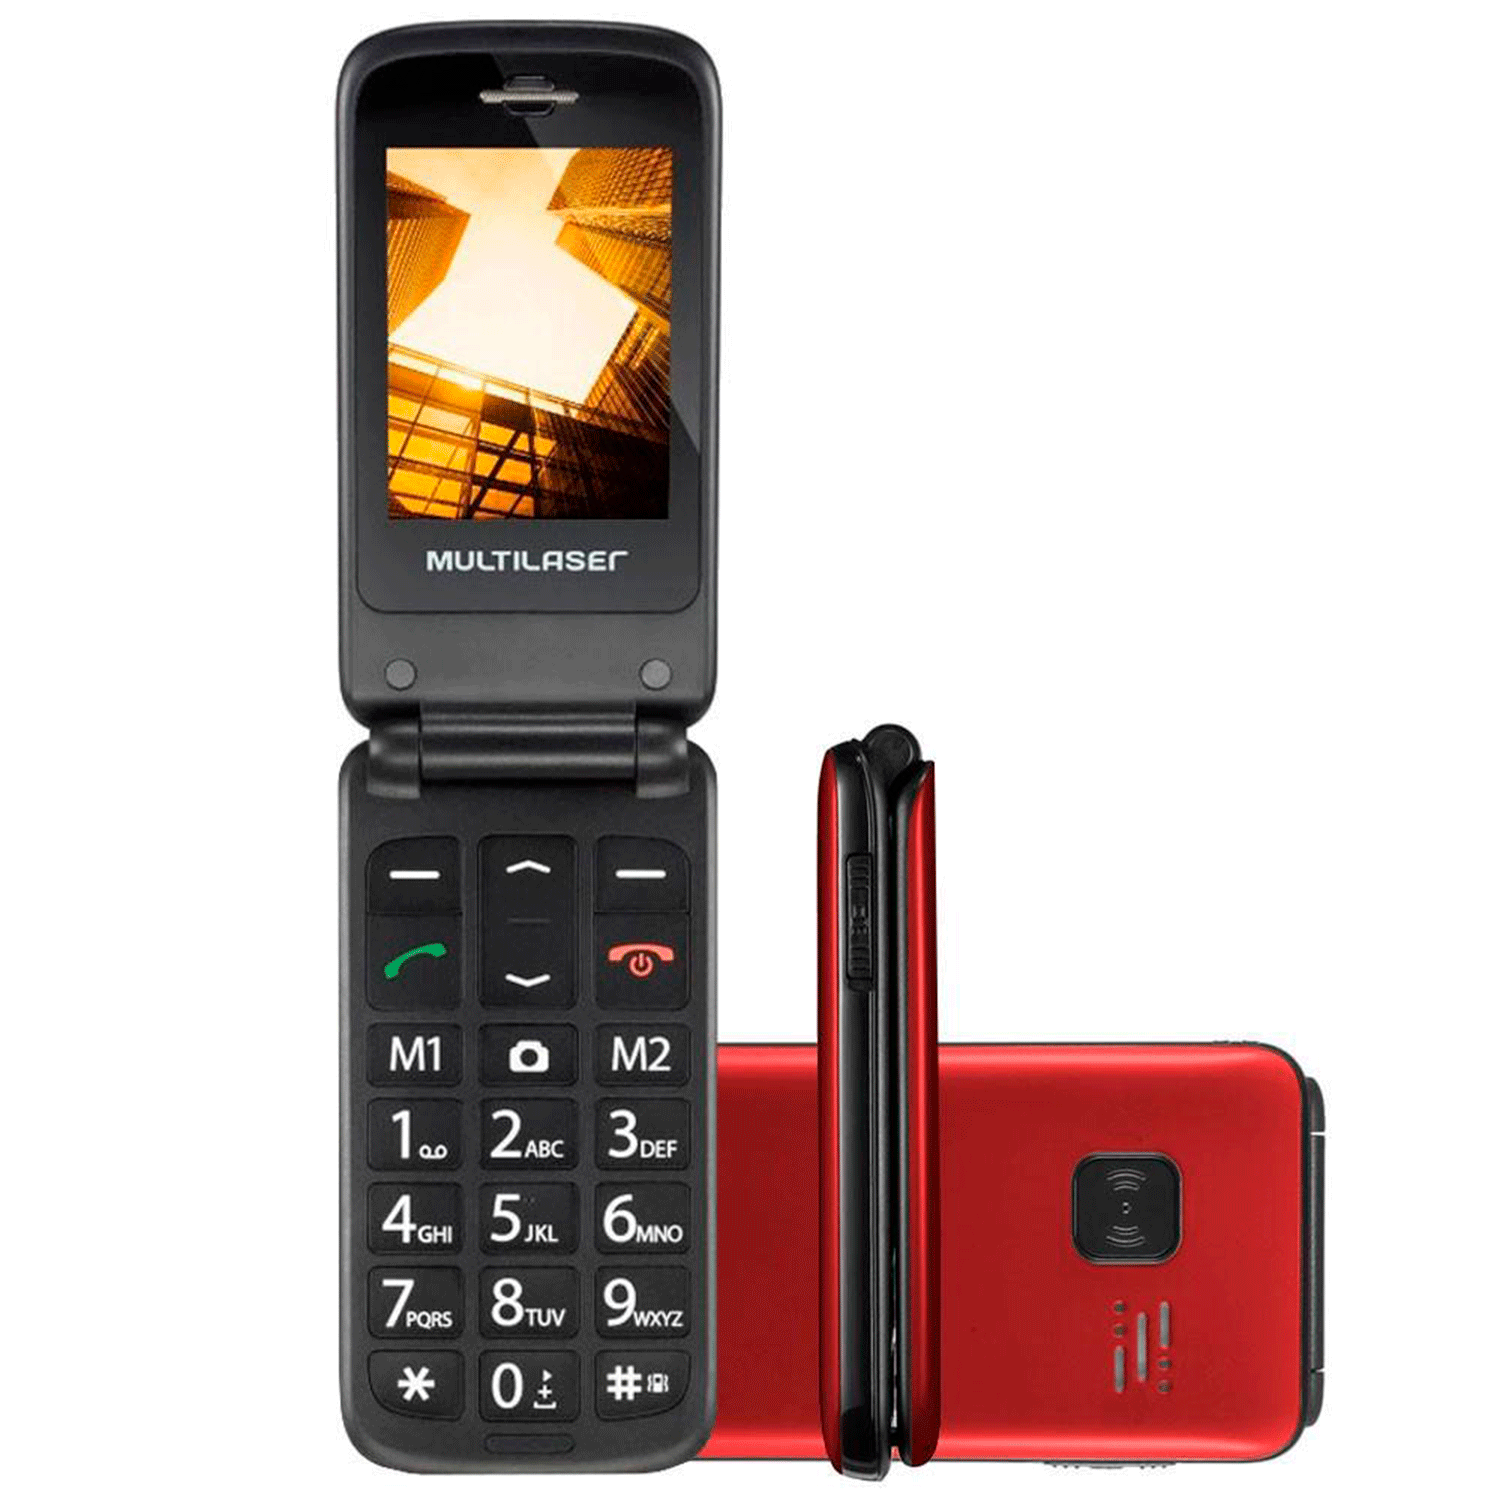 Celular Multilaser Flip Vita P9021 Dual SIM Tela 2.4" - Vermelho (Anatel)